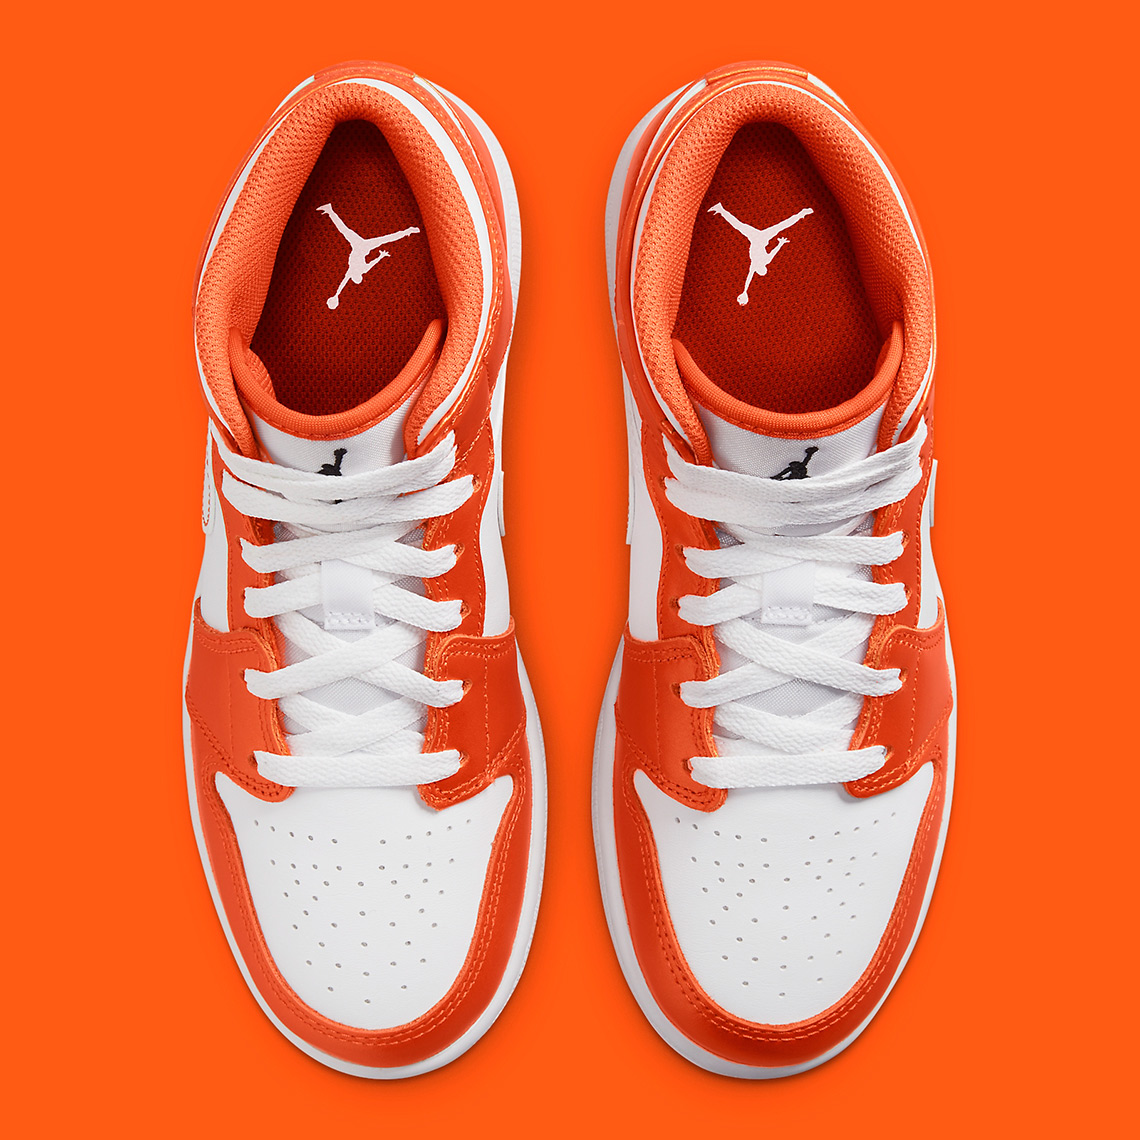 Orange Air Jordan Wallpapers